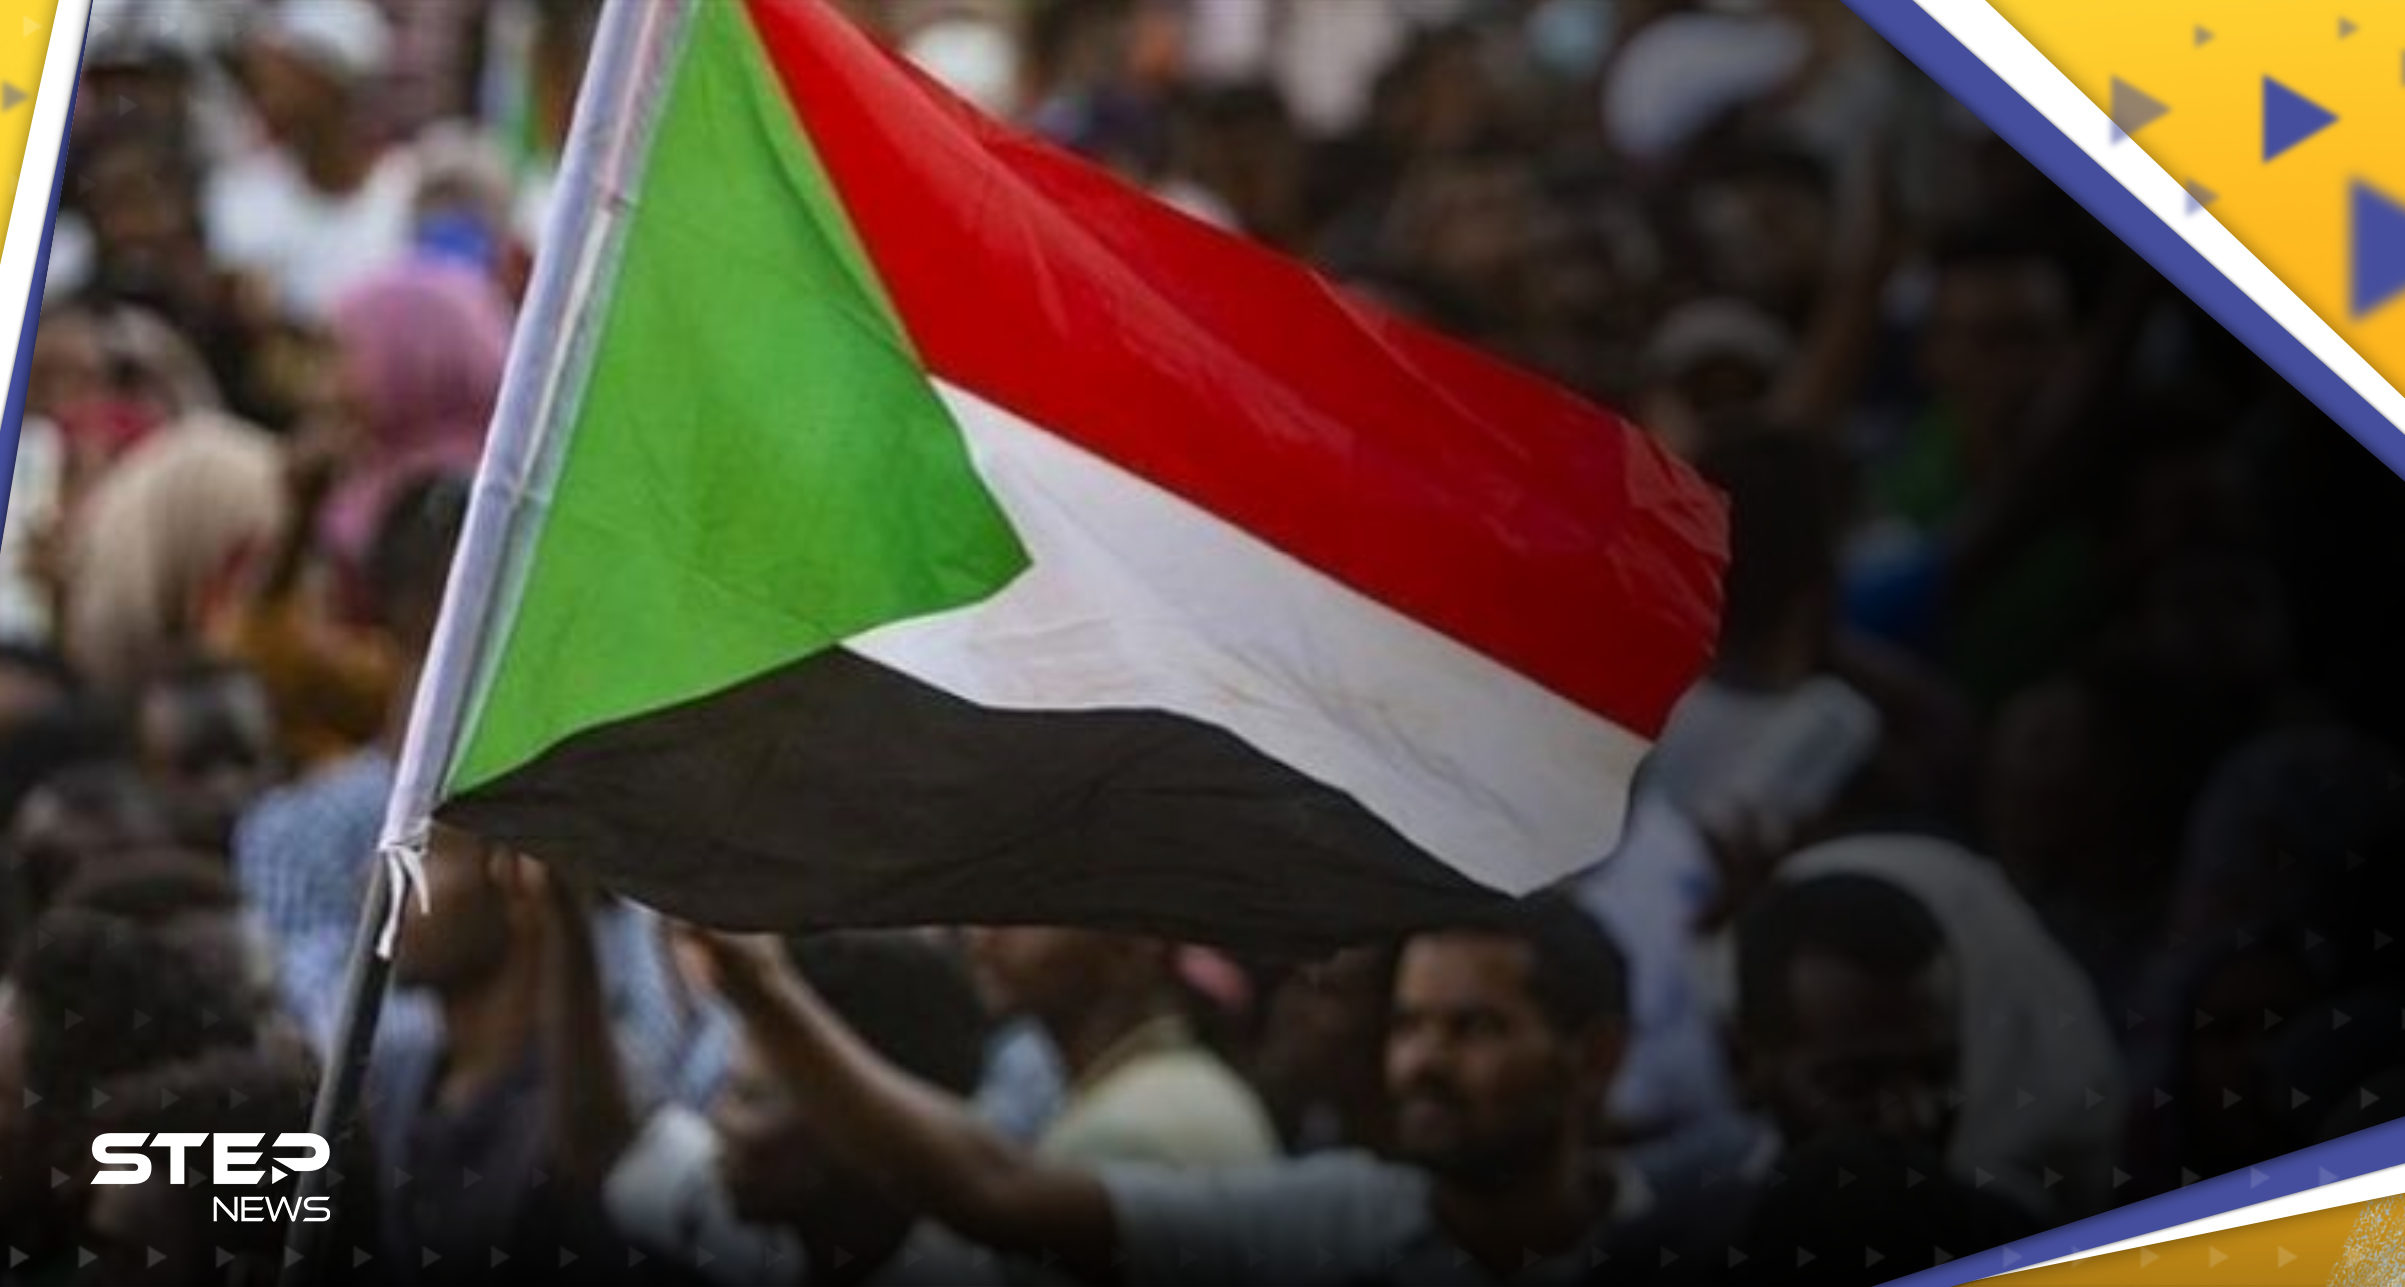  أيام حاسمة في السودان ولا بديل عن الاتفاق